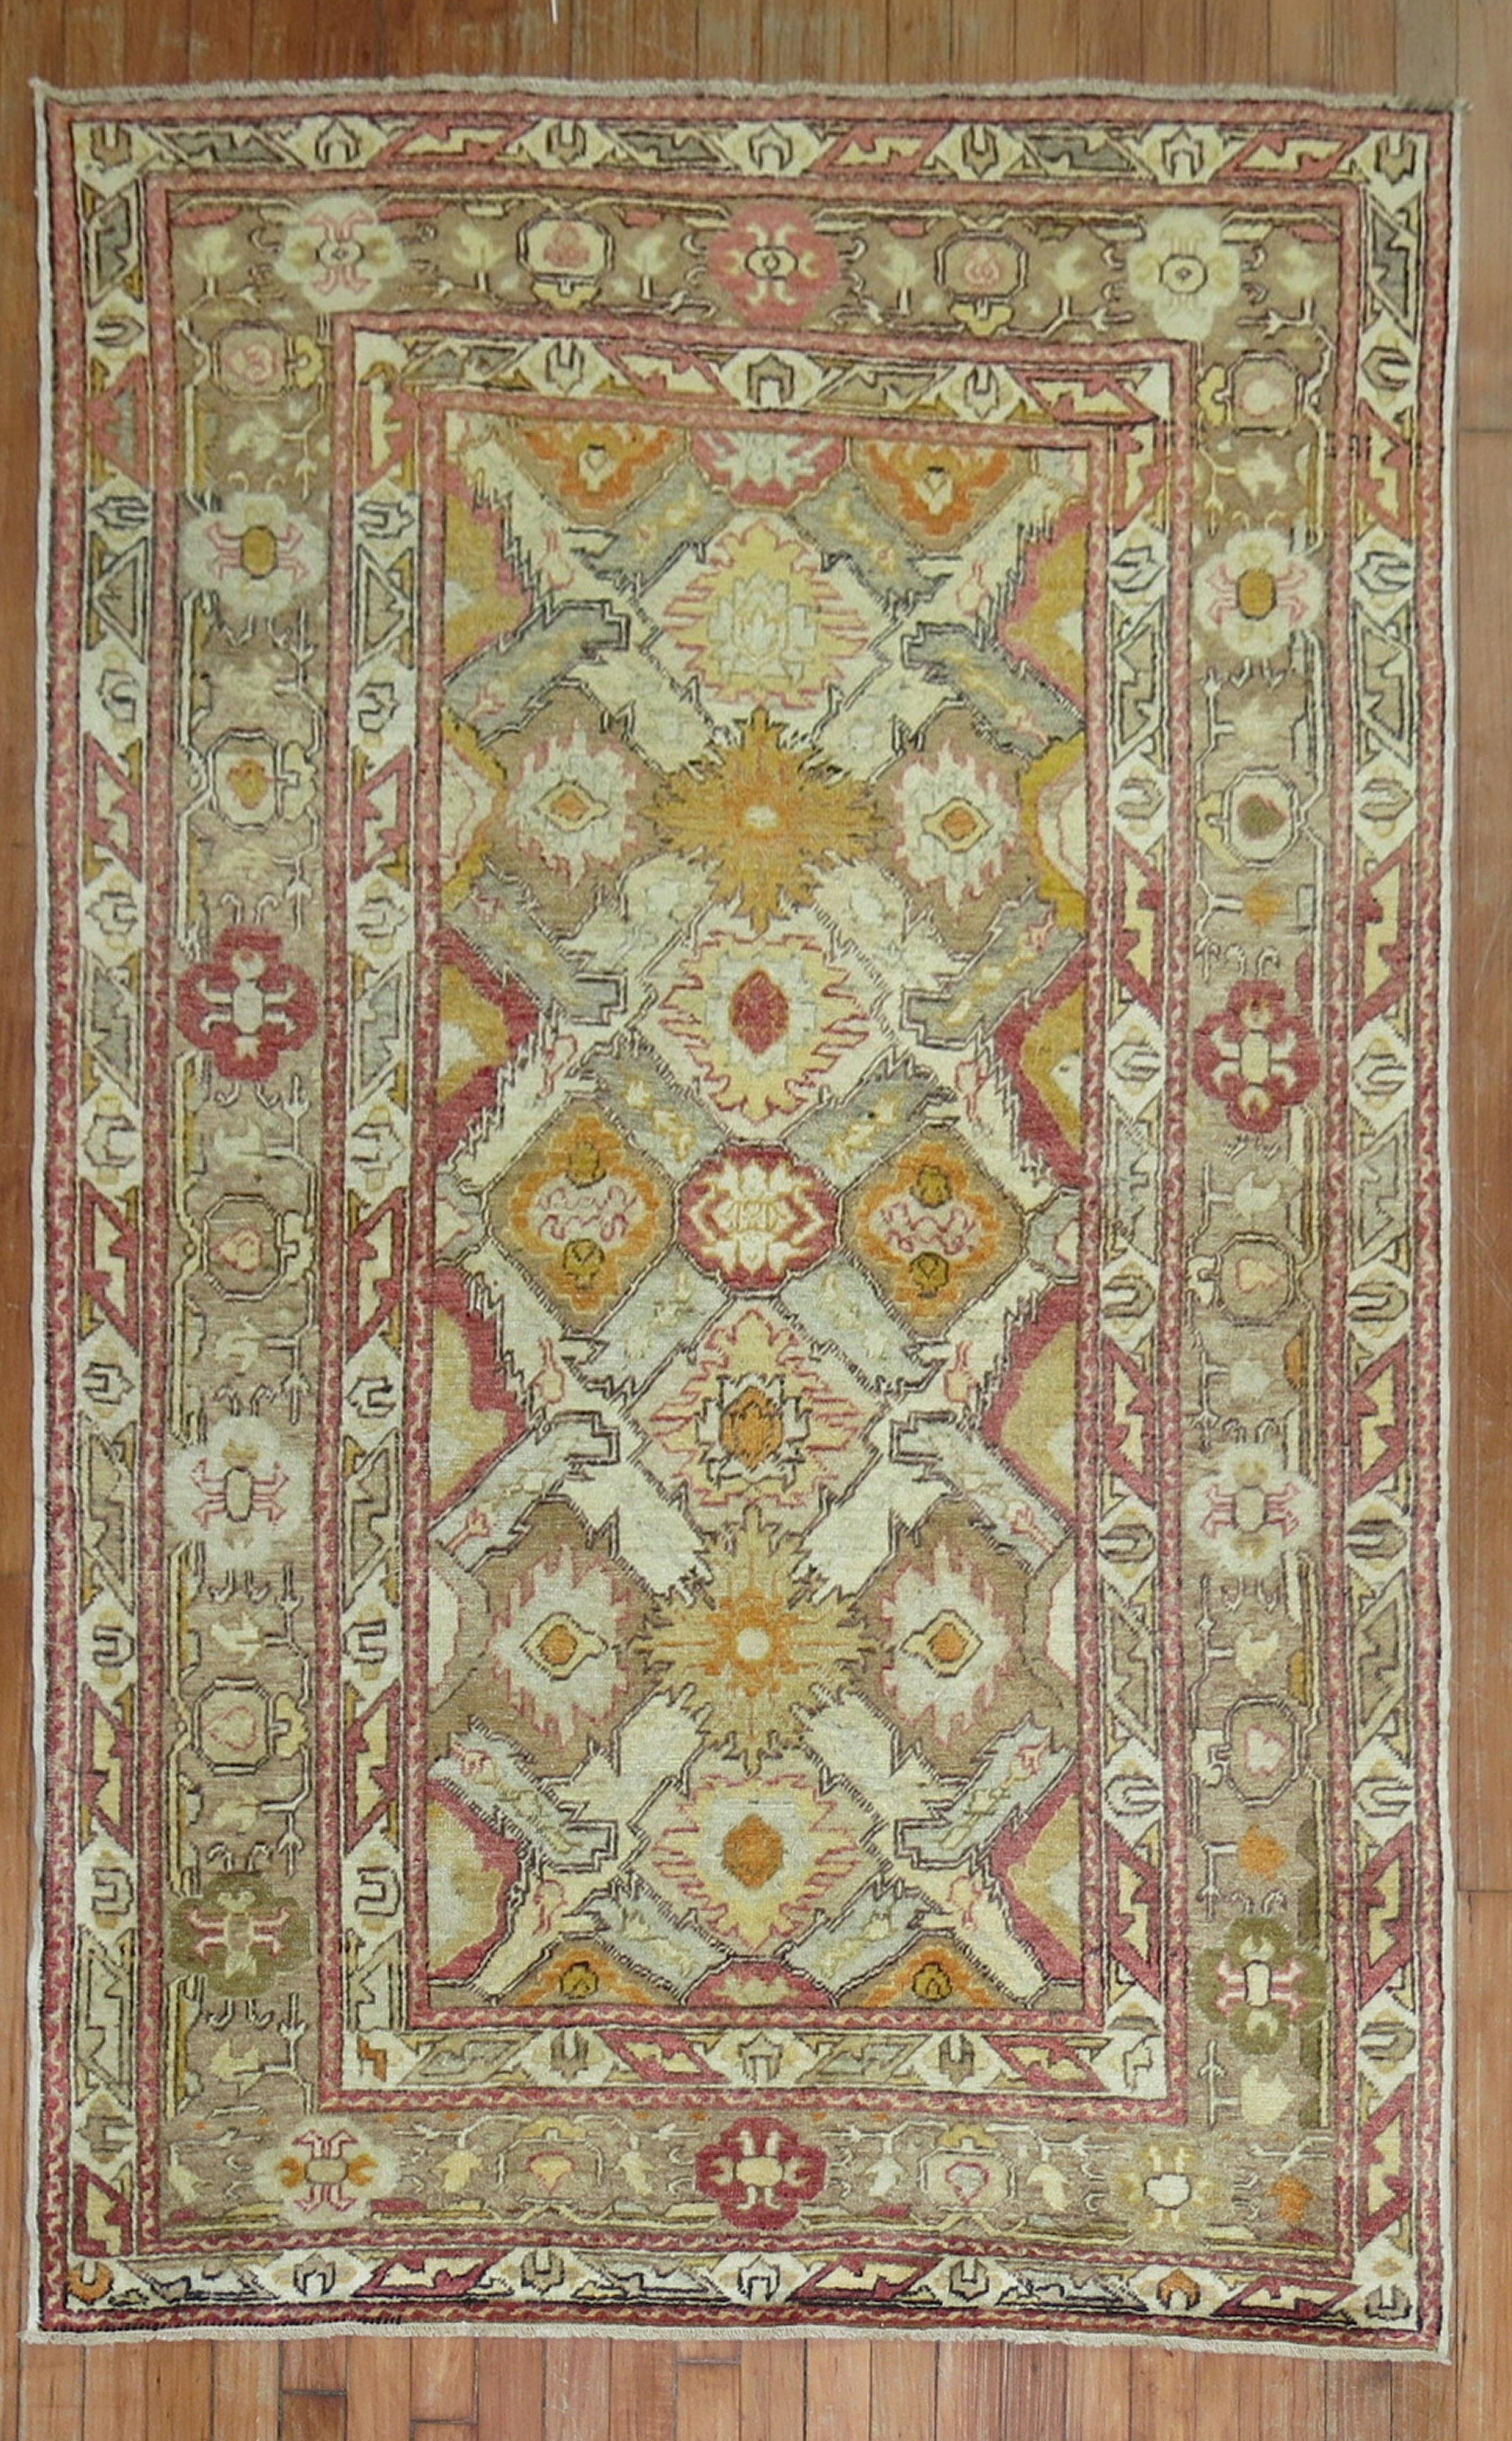 Ein türkischer Sivas-Teppich des frühen 20. Jahrhunderts in Akzentgröße.

Maße: 4'2'' x 6'3''.